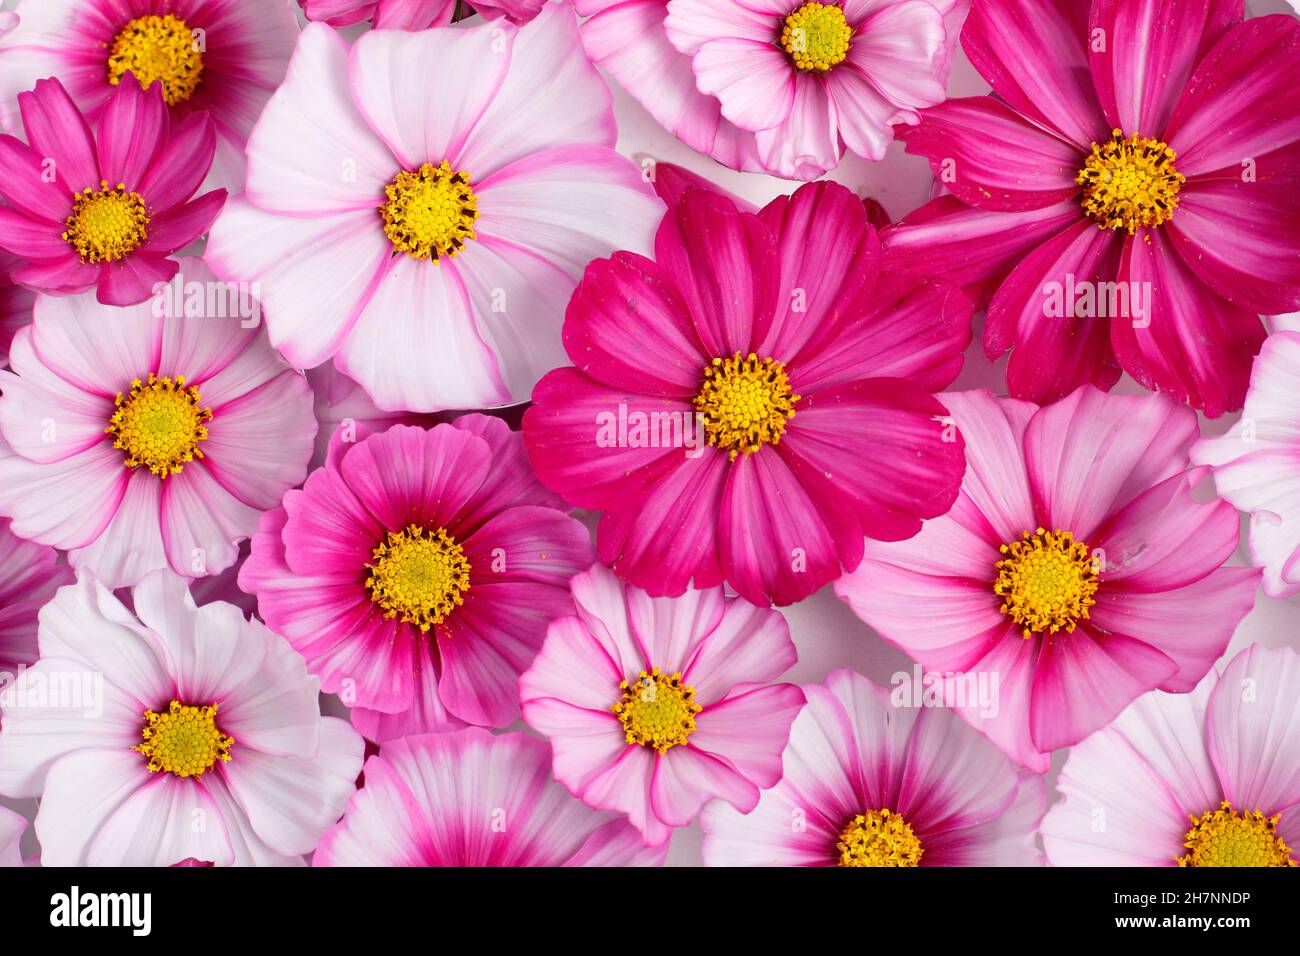 Cosmos bipinnatus. Patrón del cosmos 'Candy Stripe' flowerheads visto desde arriba.uk Foto de stock